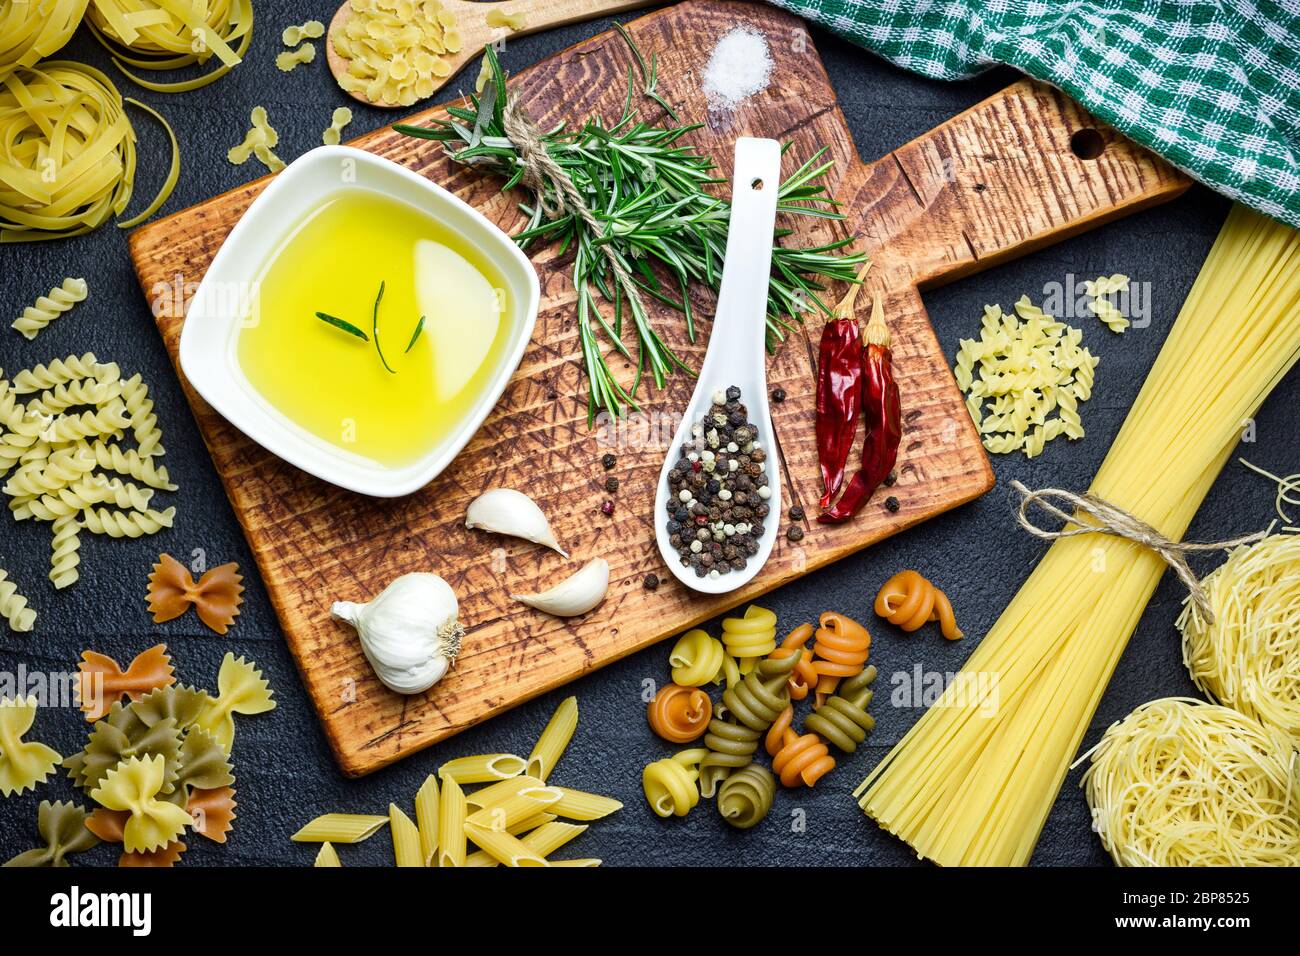 Ingrédients pour la cuisine italienne, pâtes, herbes, épices et huile d'olive sur table en pierre noire, vue du dessus. Banque D'Images